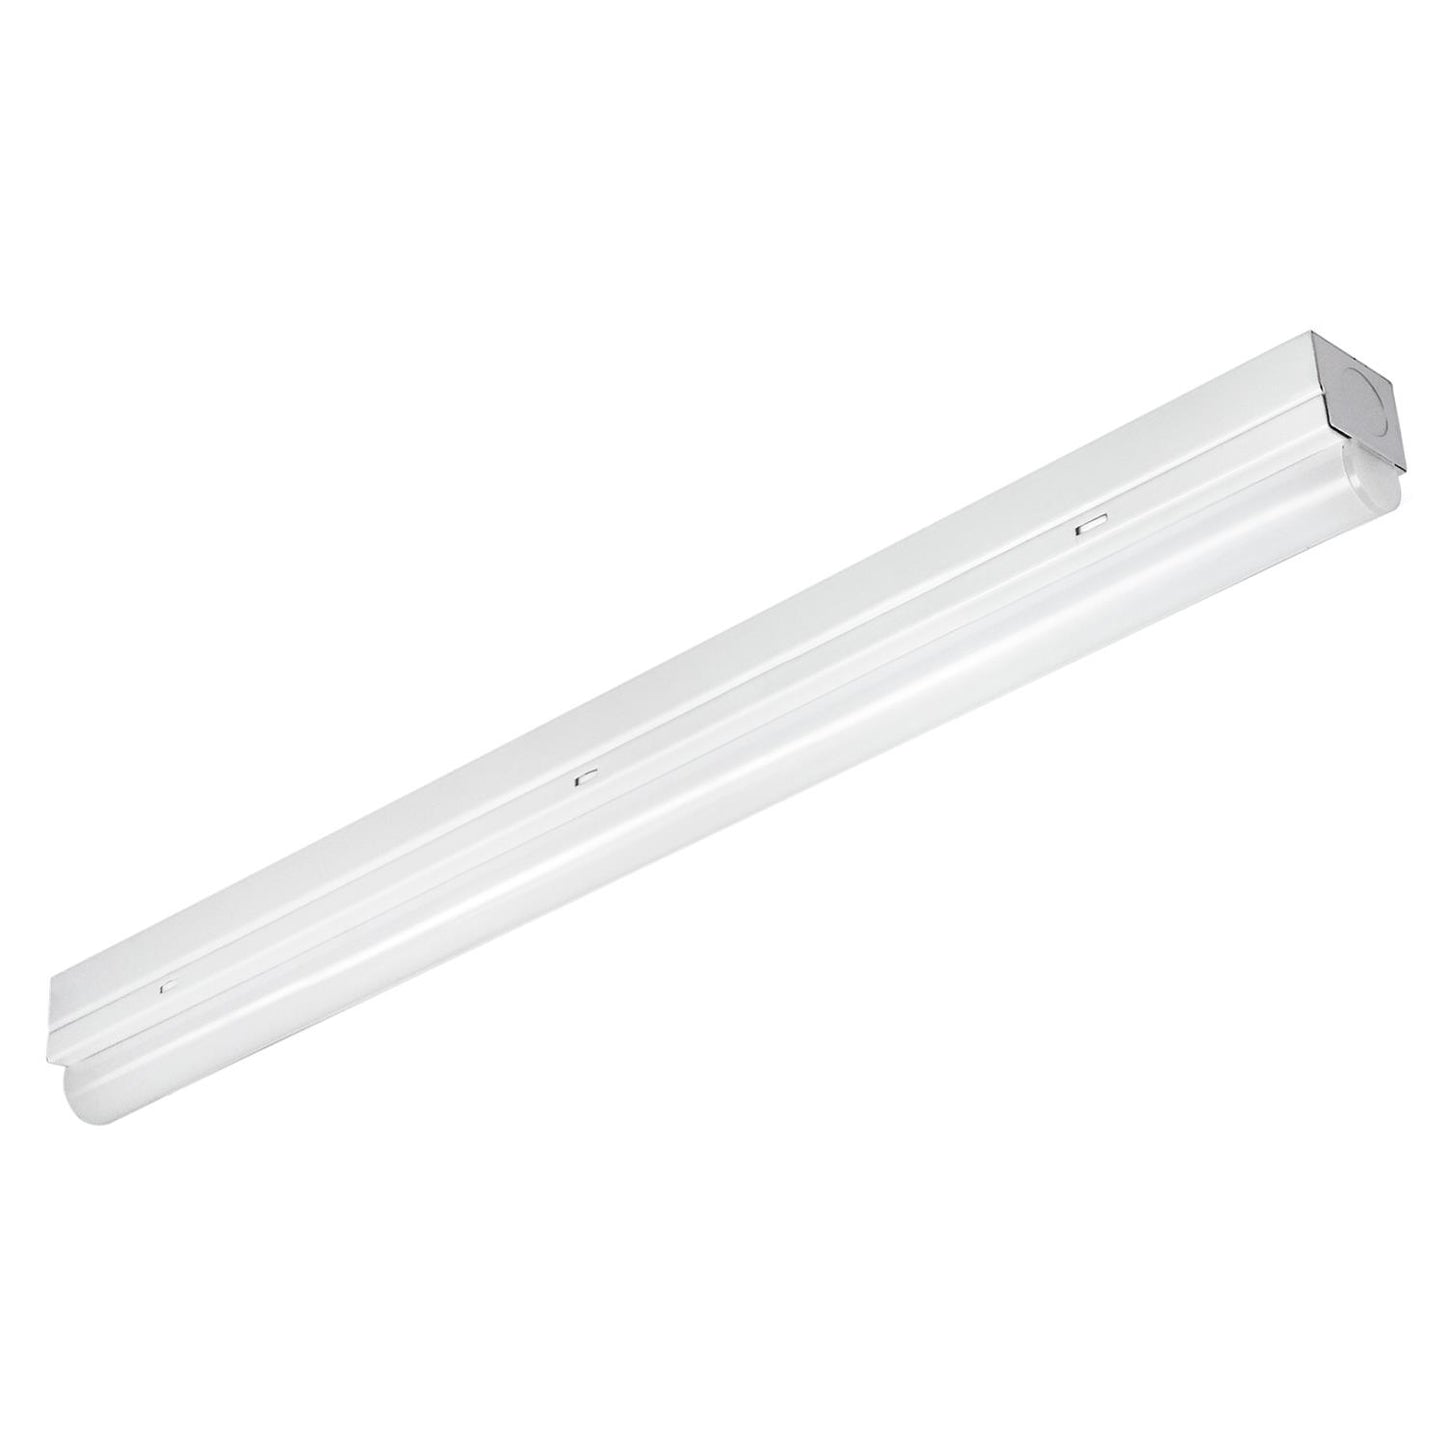 Sunlite LED 24" Linear Single Strip Fixture, 11 Watts, 3000K Warm White, 1480 Lumen